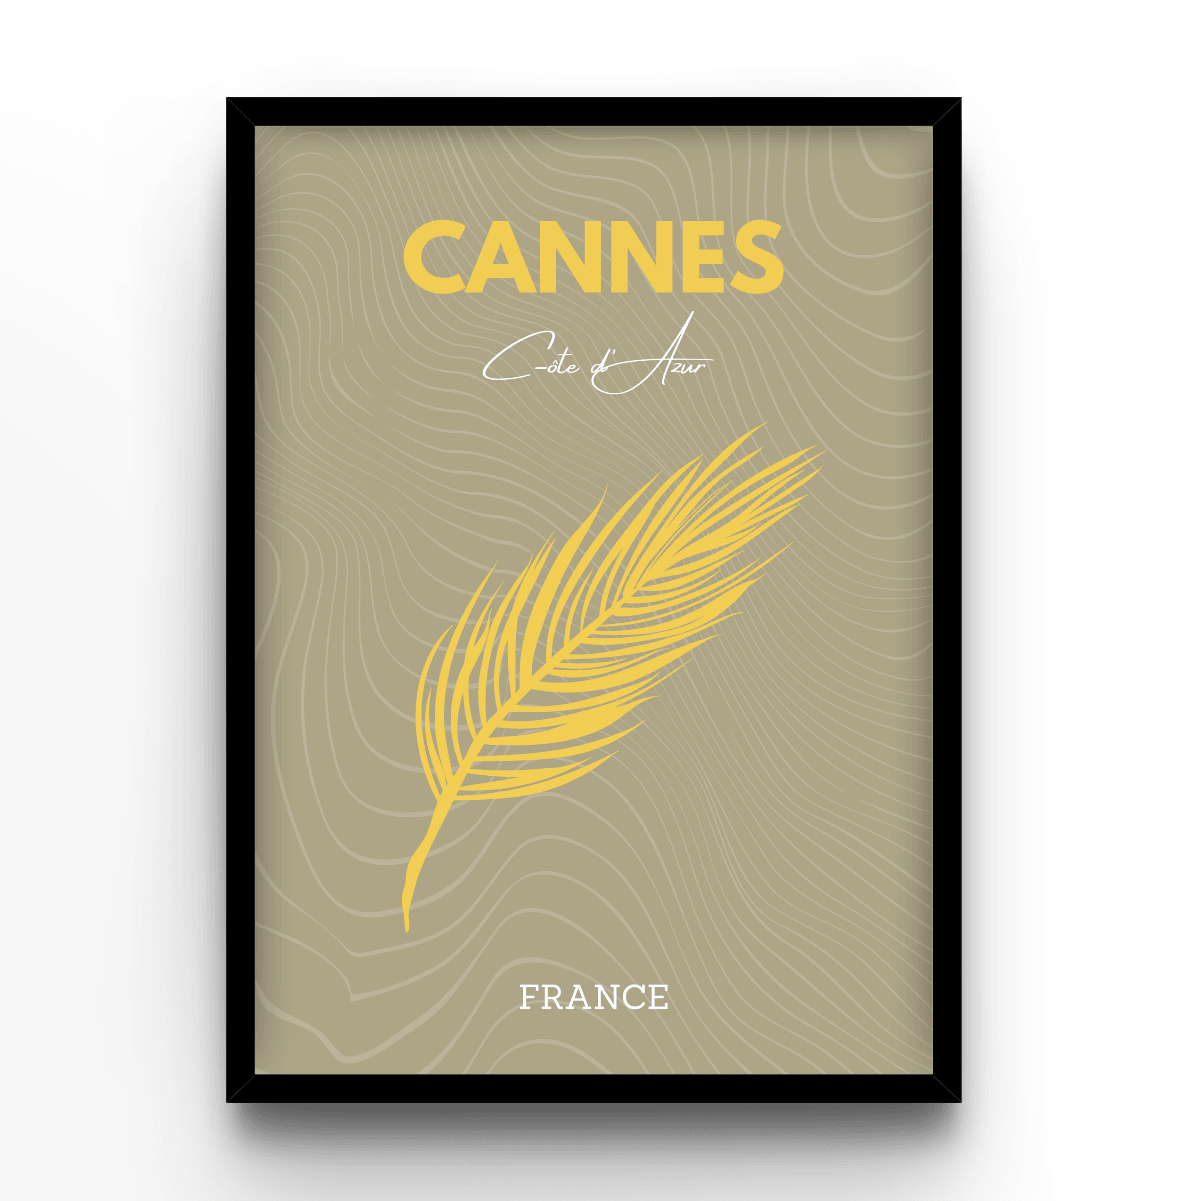 Cannes - A4, A3, A2 Posters Base - Poster Print Shop / Art Prints / PostersBase